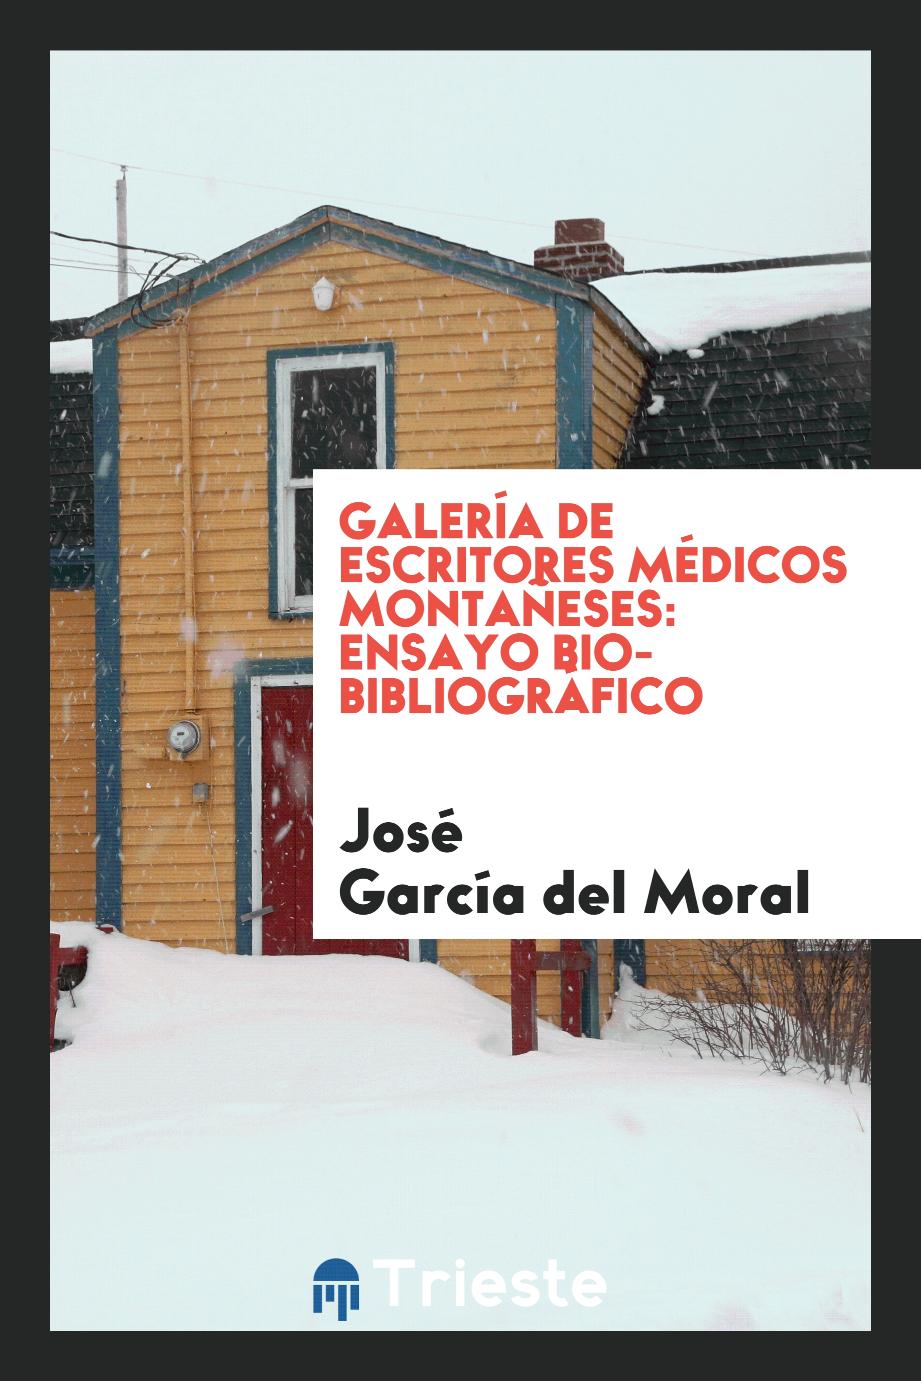 Galería de escritores médicos montañeses: ensayo bio-bibliográfico